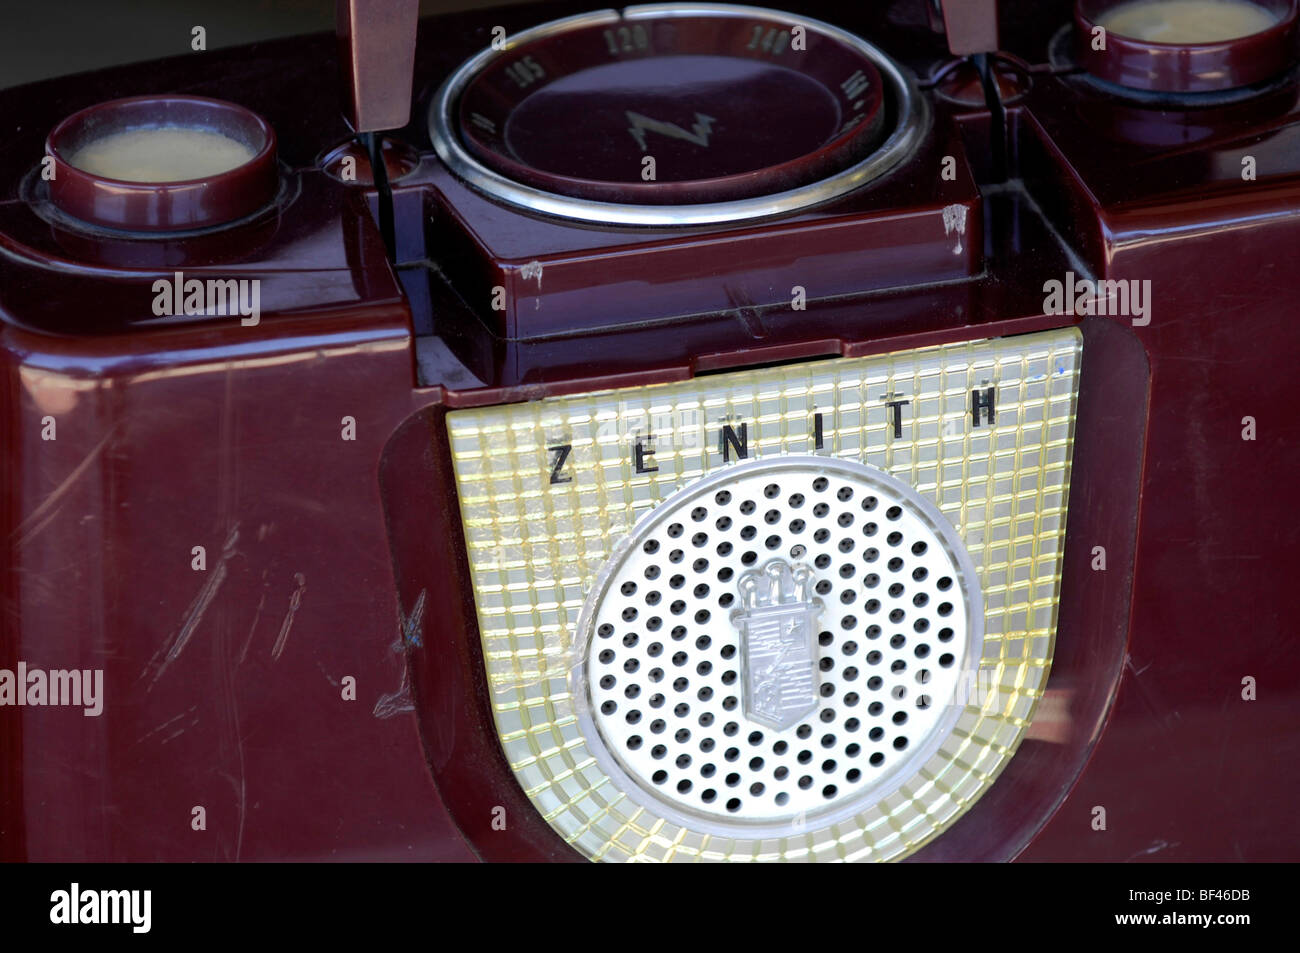 Antique vintage purple Zenith radio avec les rayures et les marques d'usure montrant des années d'utilisation. Banque D'Images